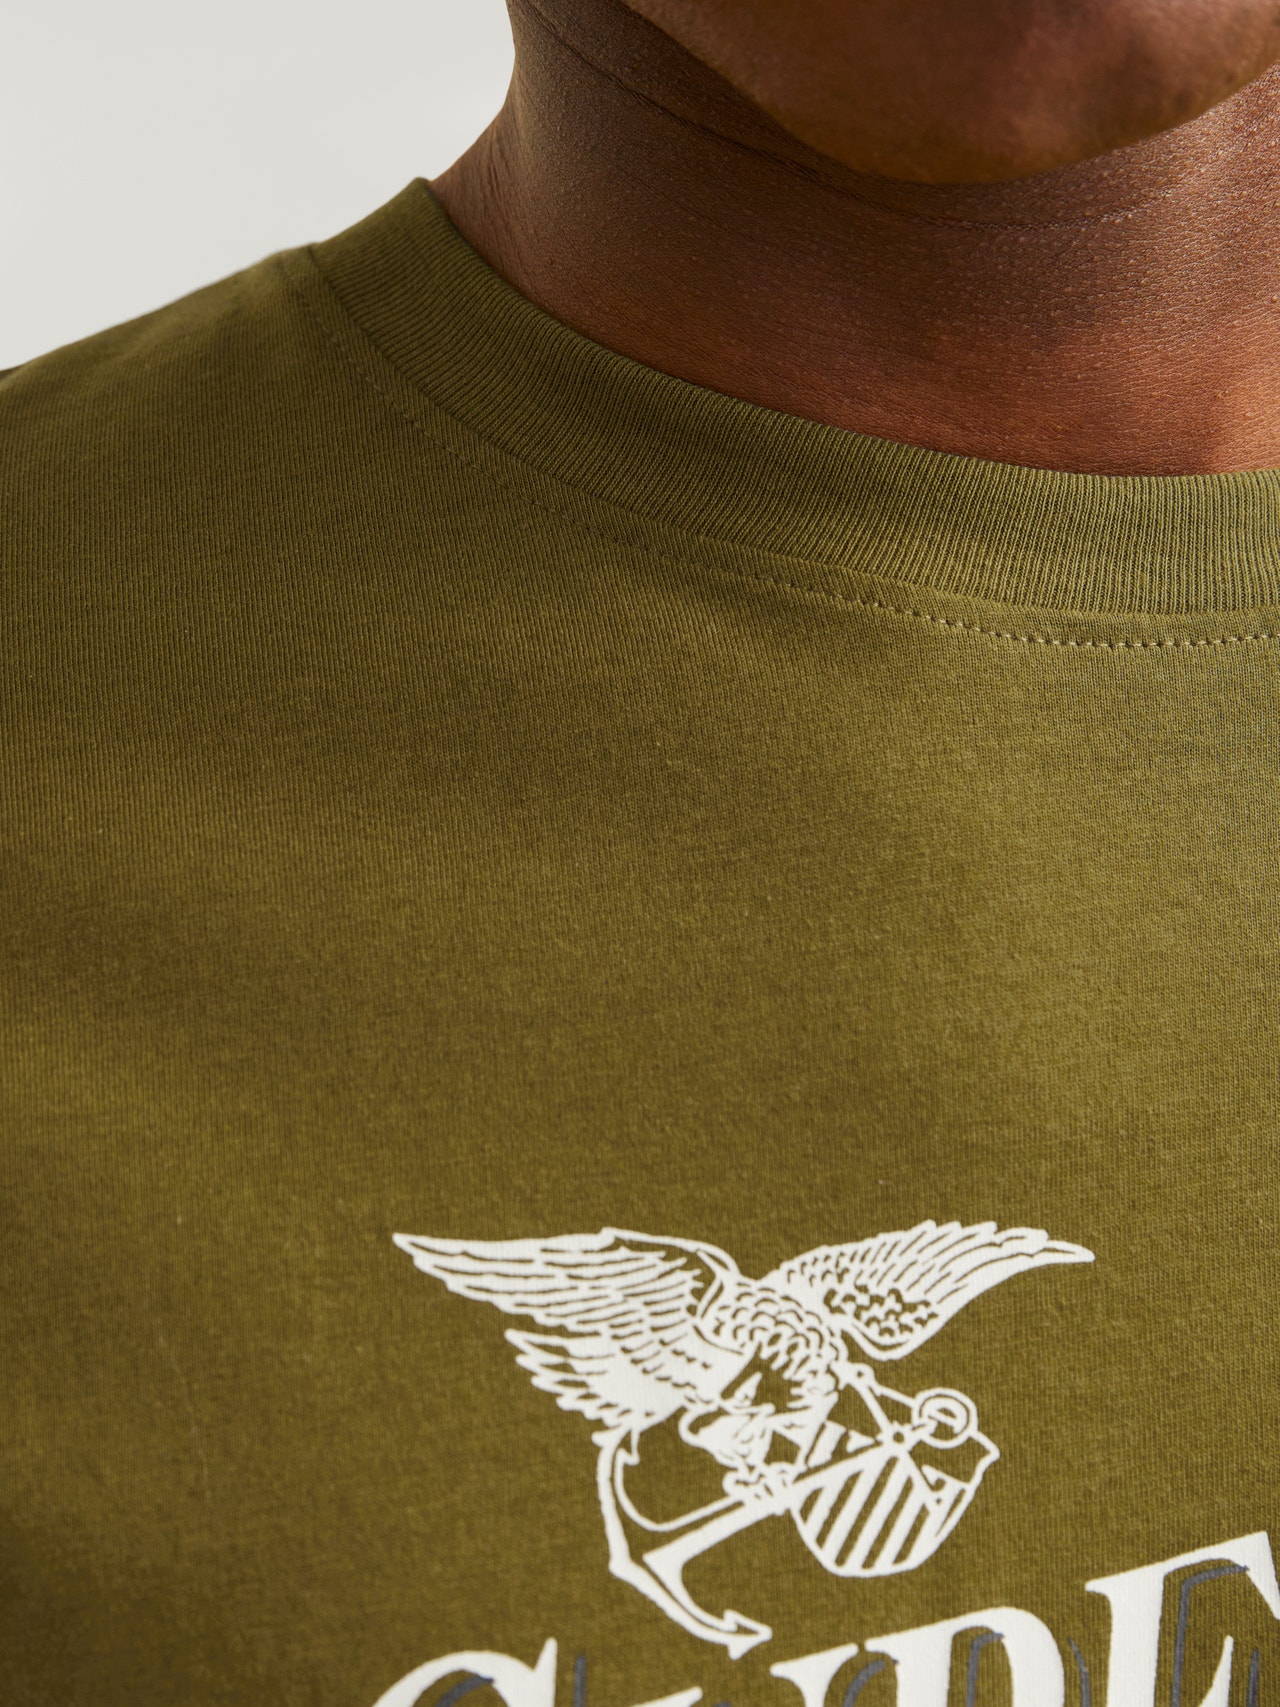 Jack & Jones Printed Crew neck T-shirt -Fir Green - 12255163